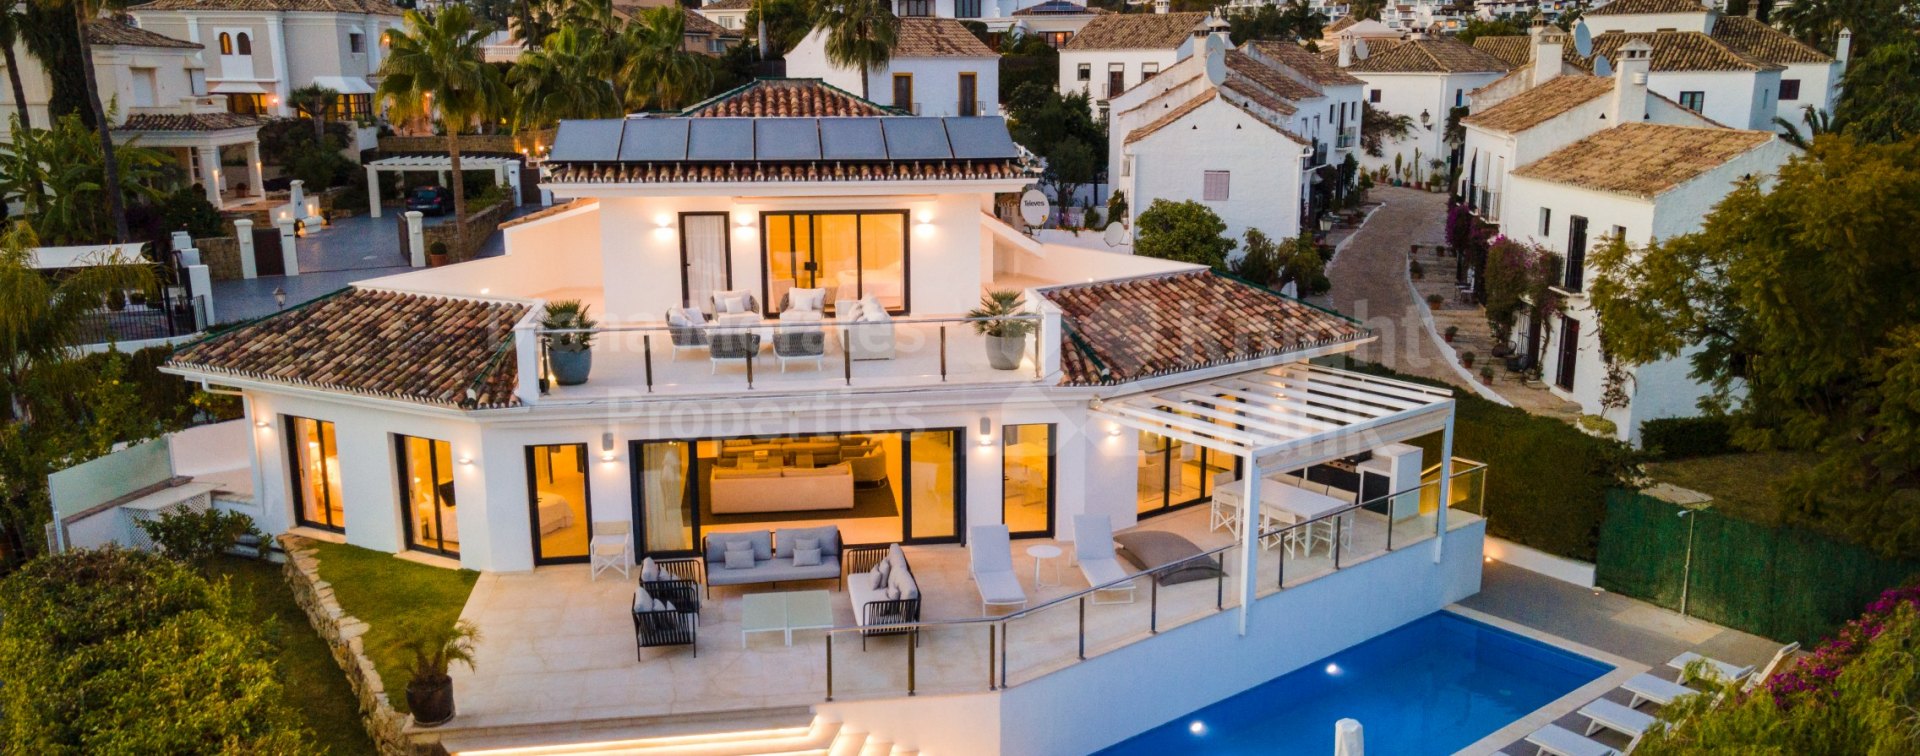 Beautiful refurbished villa in Las Brisas with sea views